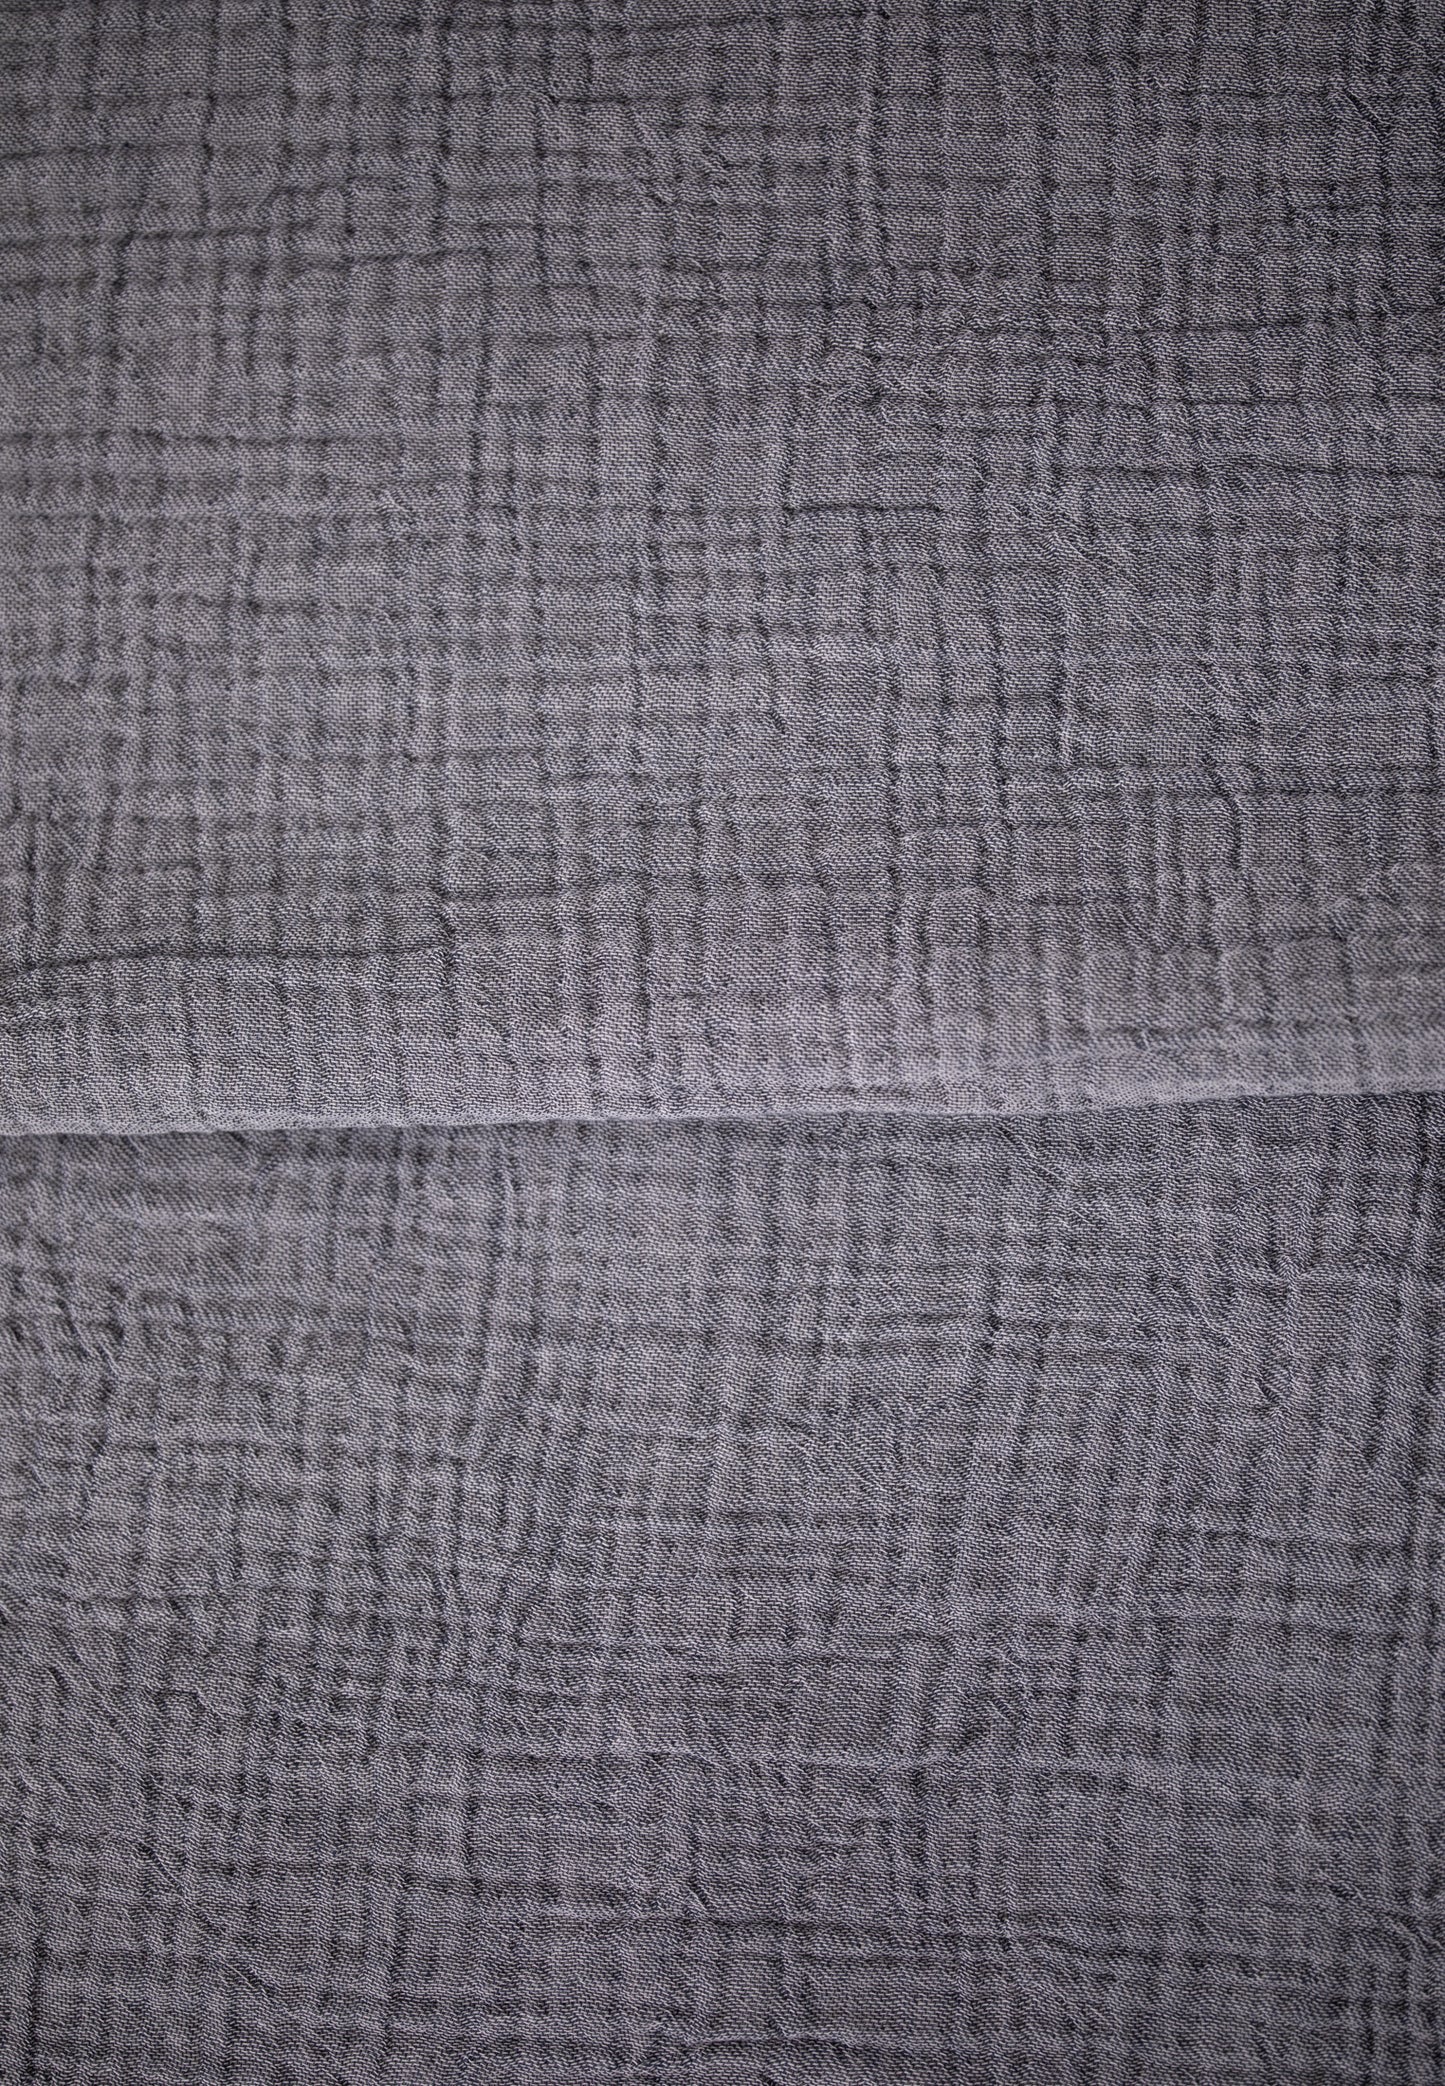 Premium Musselin Tagesdecke 240x260 cm - 100% Baumwolle - extraweiche Baumwolldecke als Kuscheldecke, Bett-Überwurf, Sofa-Überwurf, Couch-Überwurf - warme Sofa-Decke LMS-6481 (Anthrazit)